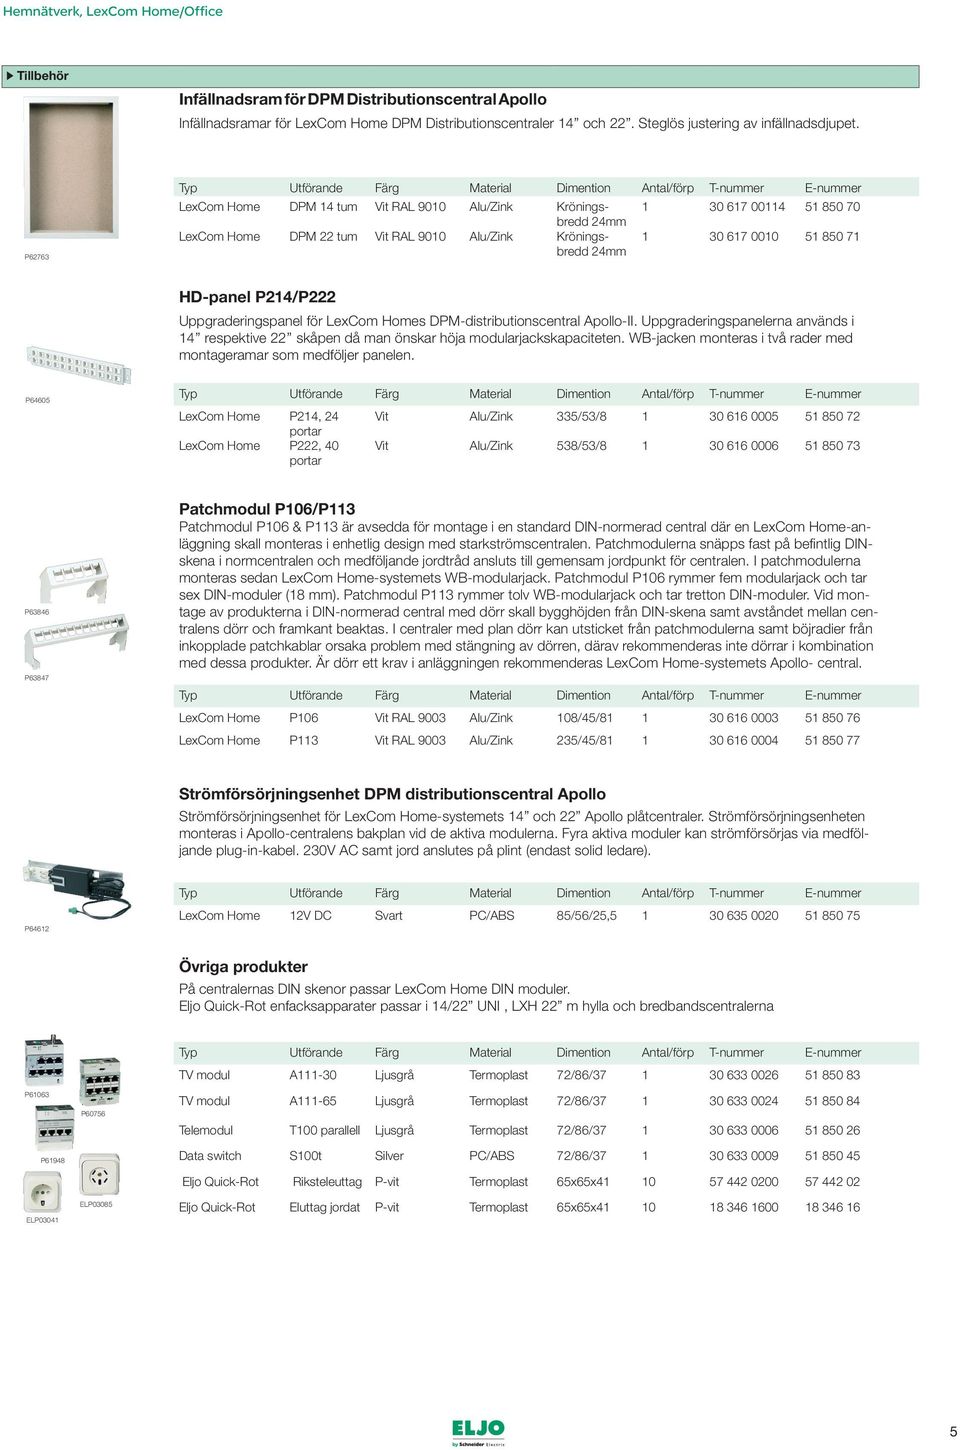 P214/P222 Uppgraderingspanel för LexCom Homes DPM-distributionscentral Apollo-II. Uppgraderingspanelerna används i 14 respektive 22 skåpen då man önskar höja modularjackskapaciteten.